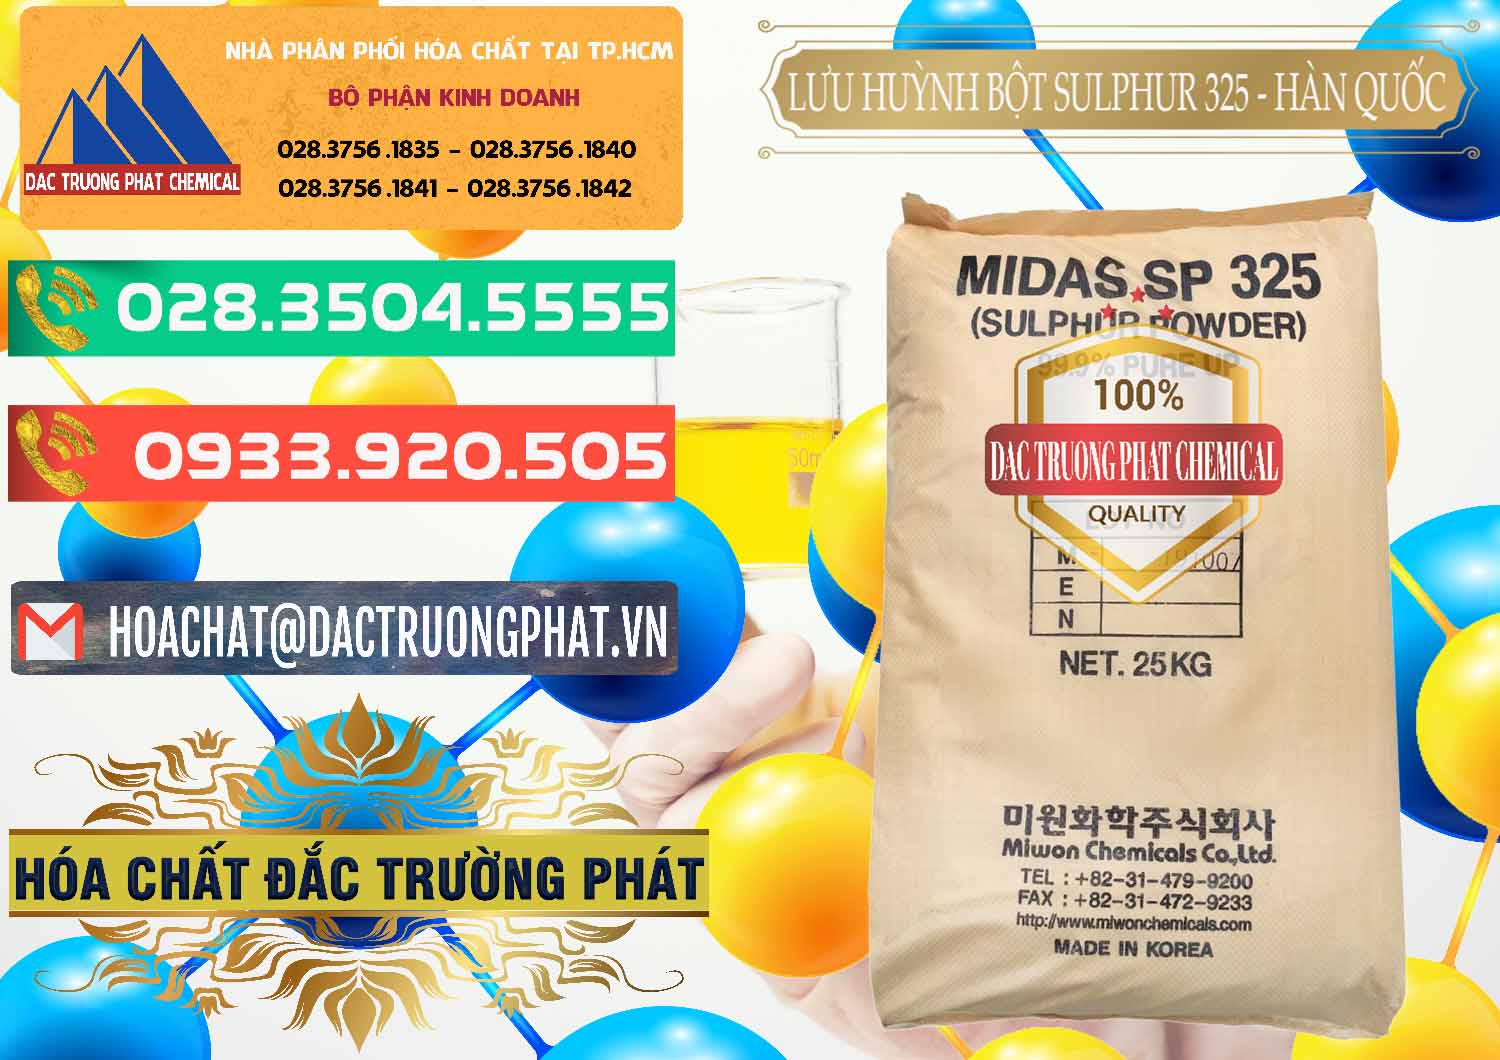 Cty cung cấp & bán Lưu huỳnh Bột - Sulfur Powder Midas SP 325 Hàn Quốc Korea - 0198 - Bán ( phân phối ) hóa chất tại TP.HCM - congtyhoachat.com.vn